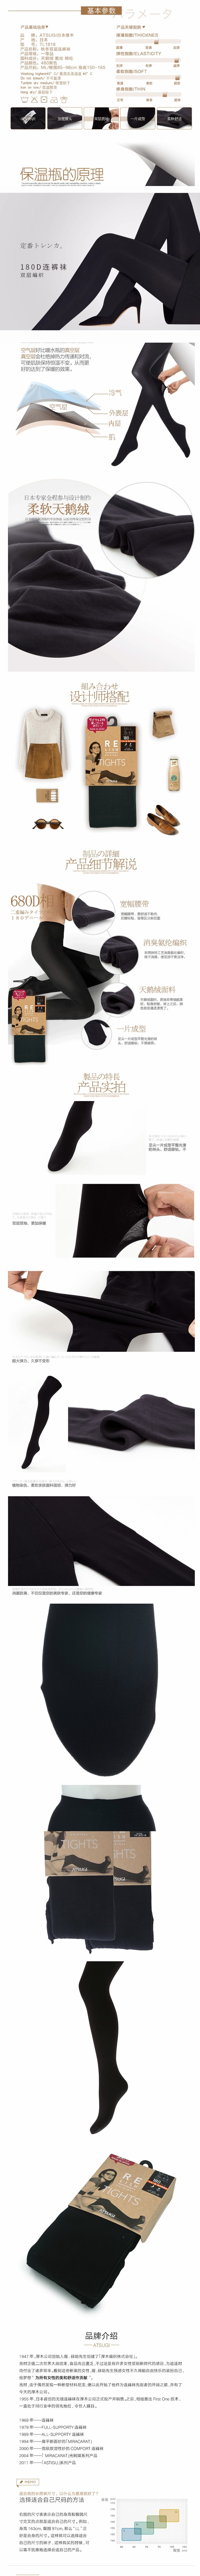 【日本直邮】日本厚木ATSUGI 魔法瓶构造 打底袜装180D 显瘦打底丝袜连裤袜 ML